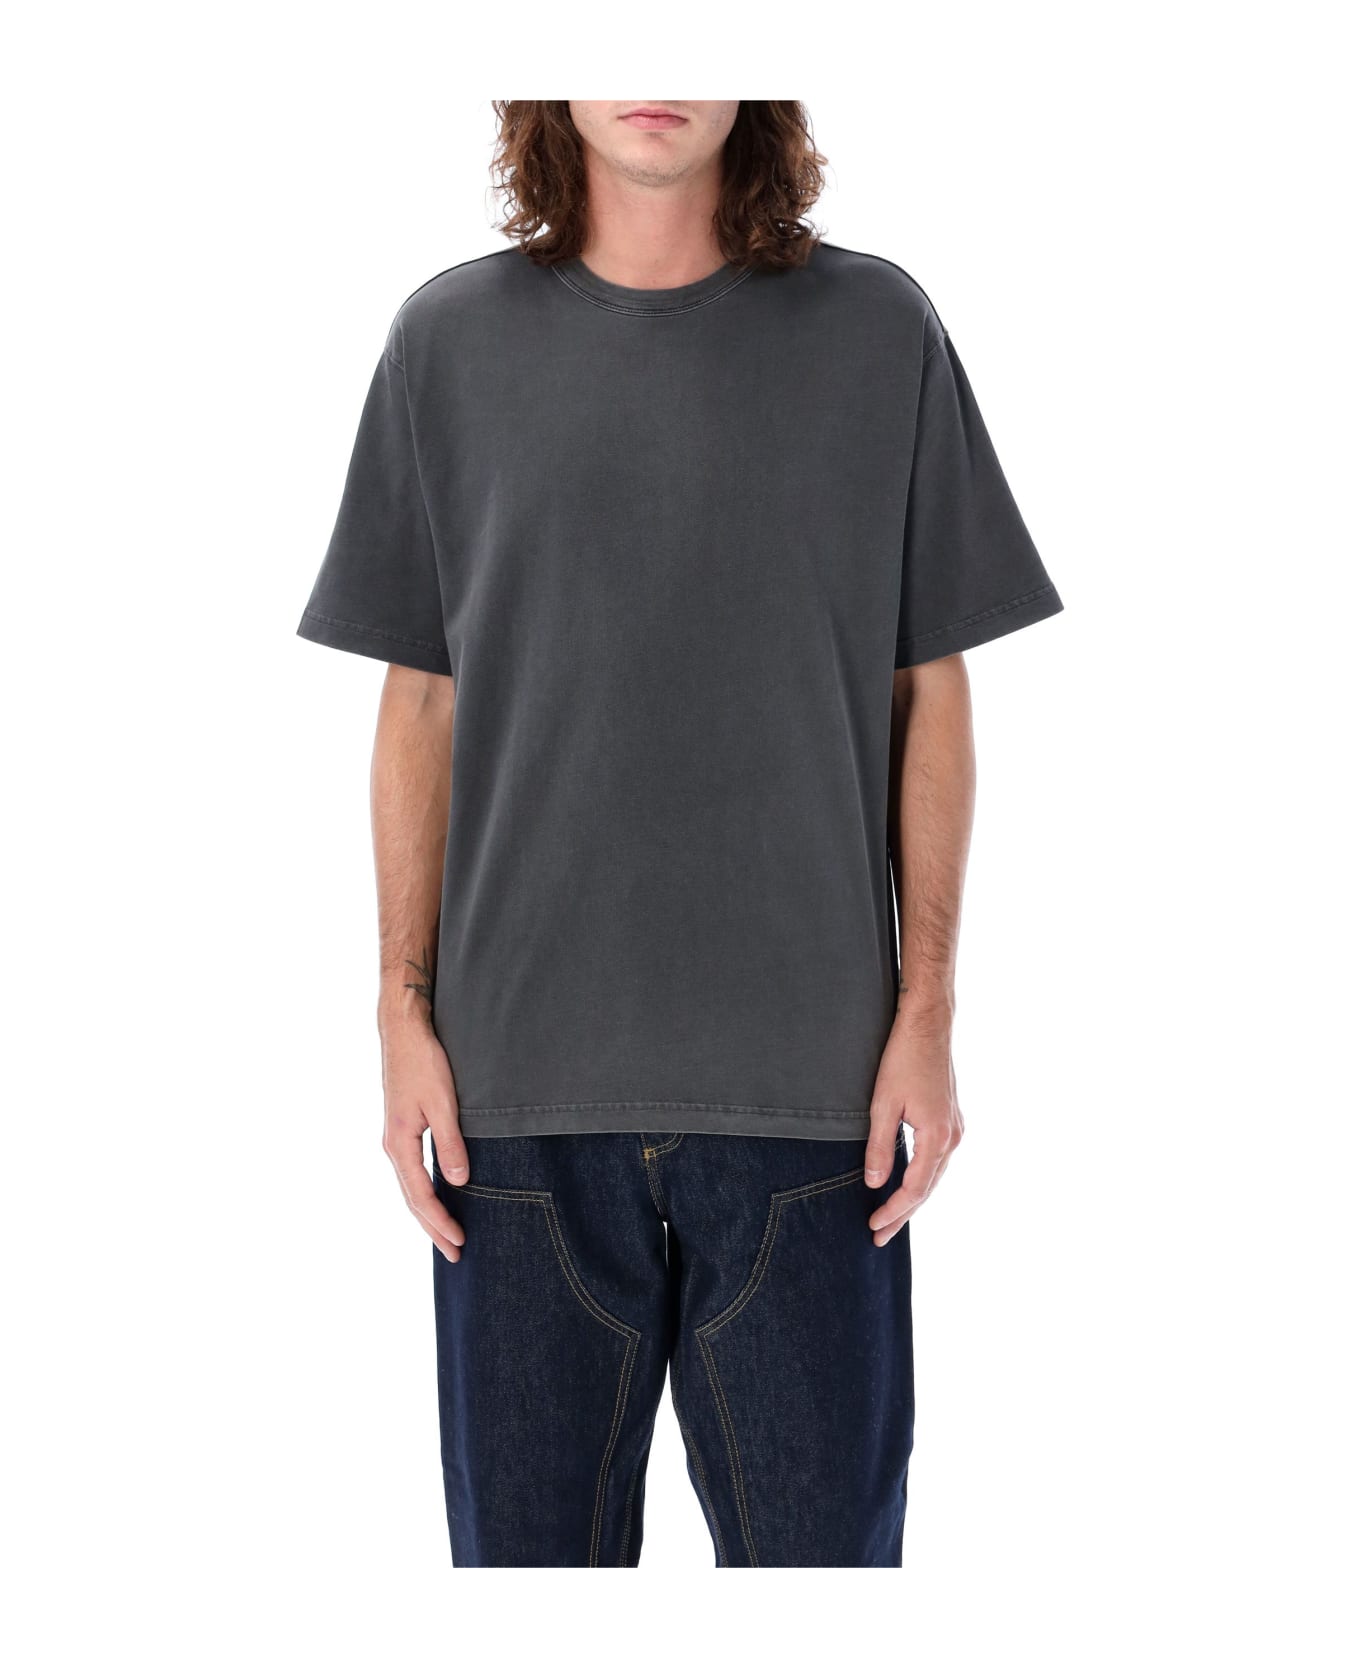 Carhartt Taos T-shirt - GREY